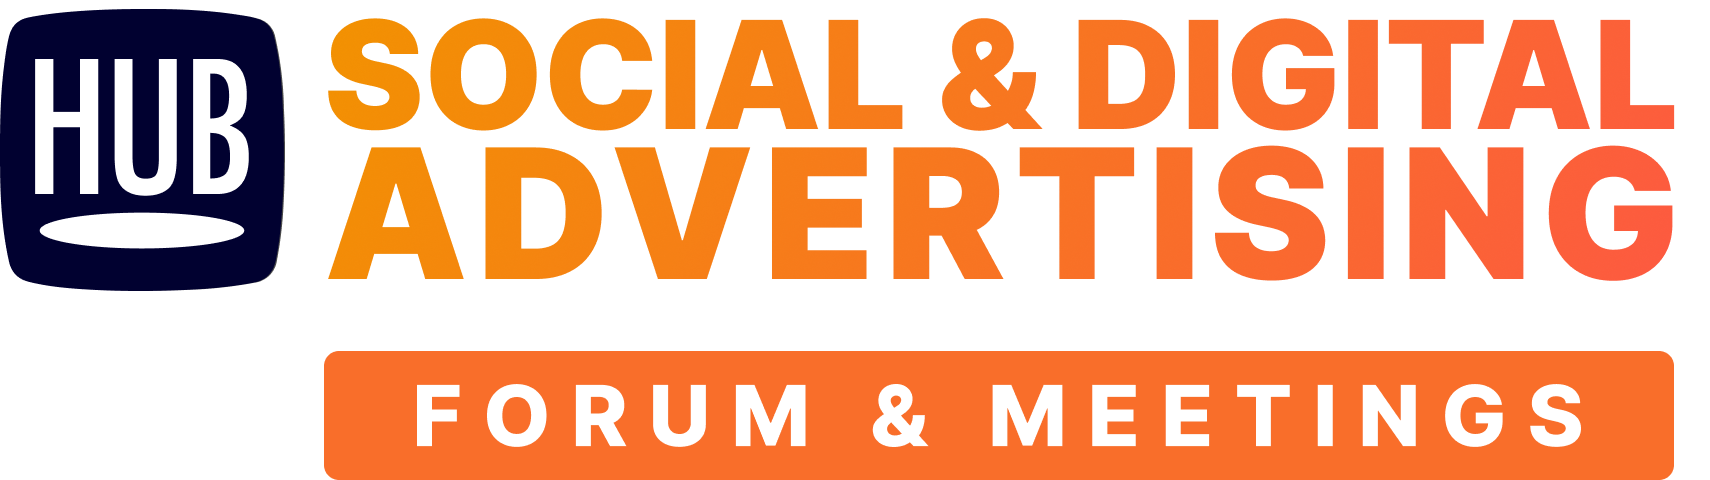 SOCIAL & DIGITAL ADVERTISING Forum & Meetings NOV2022